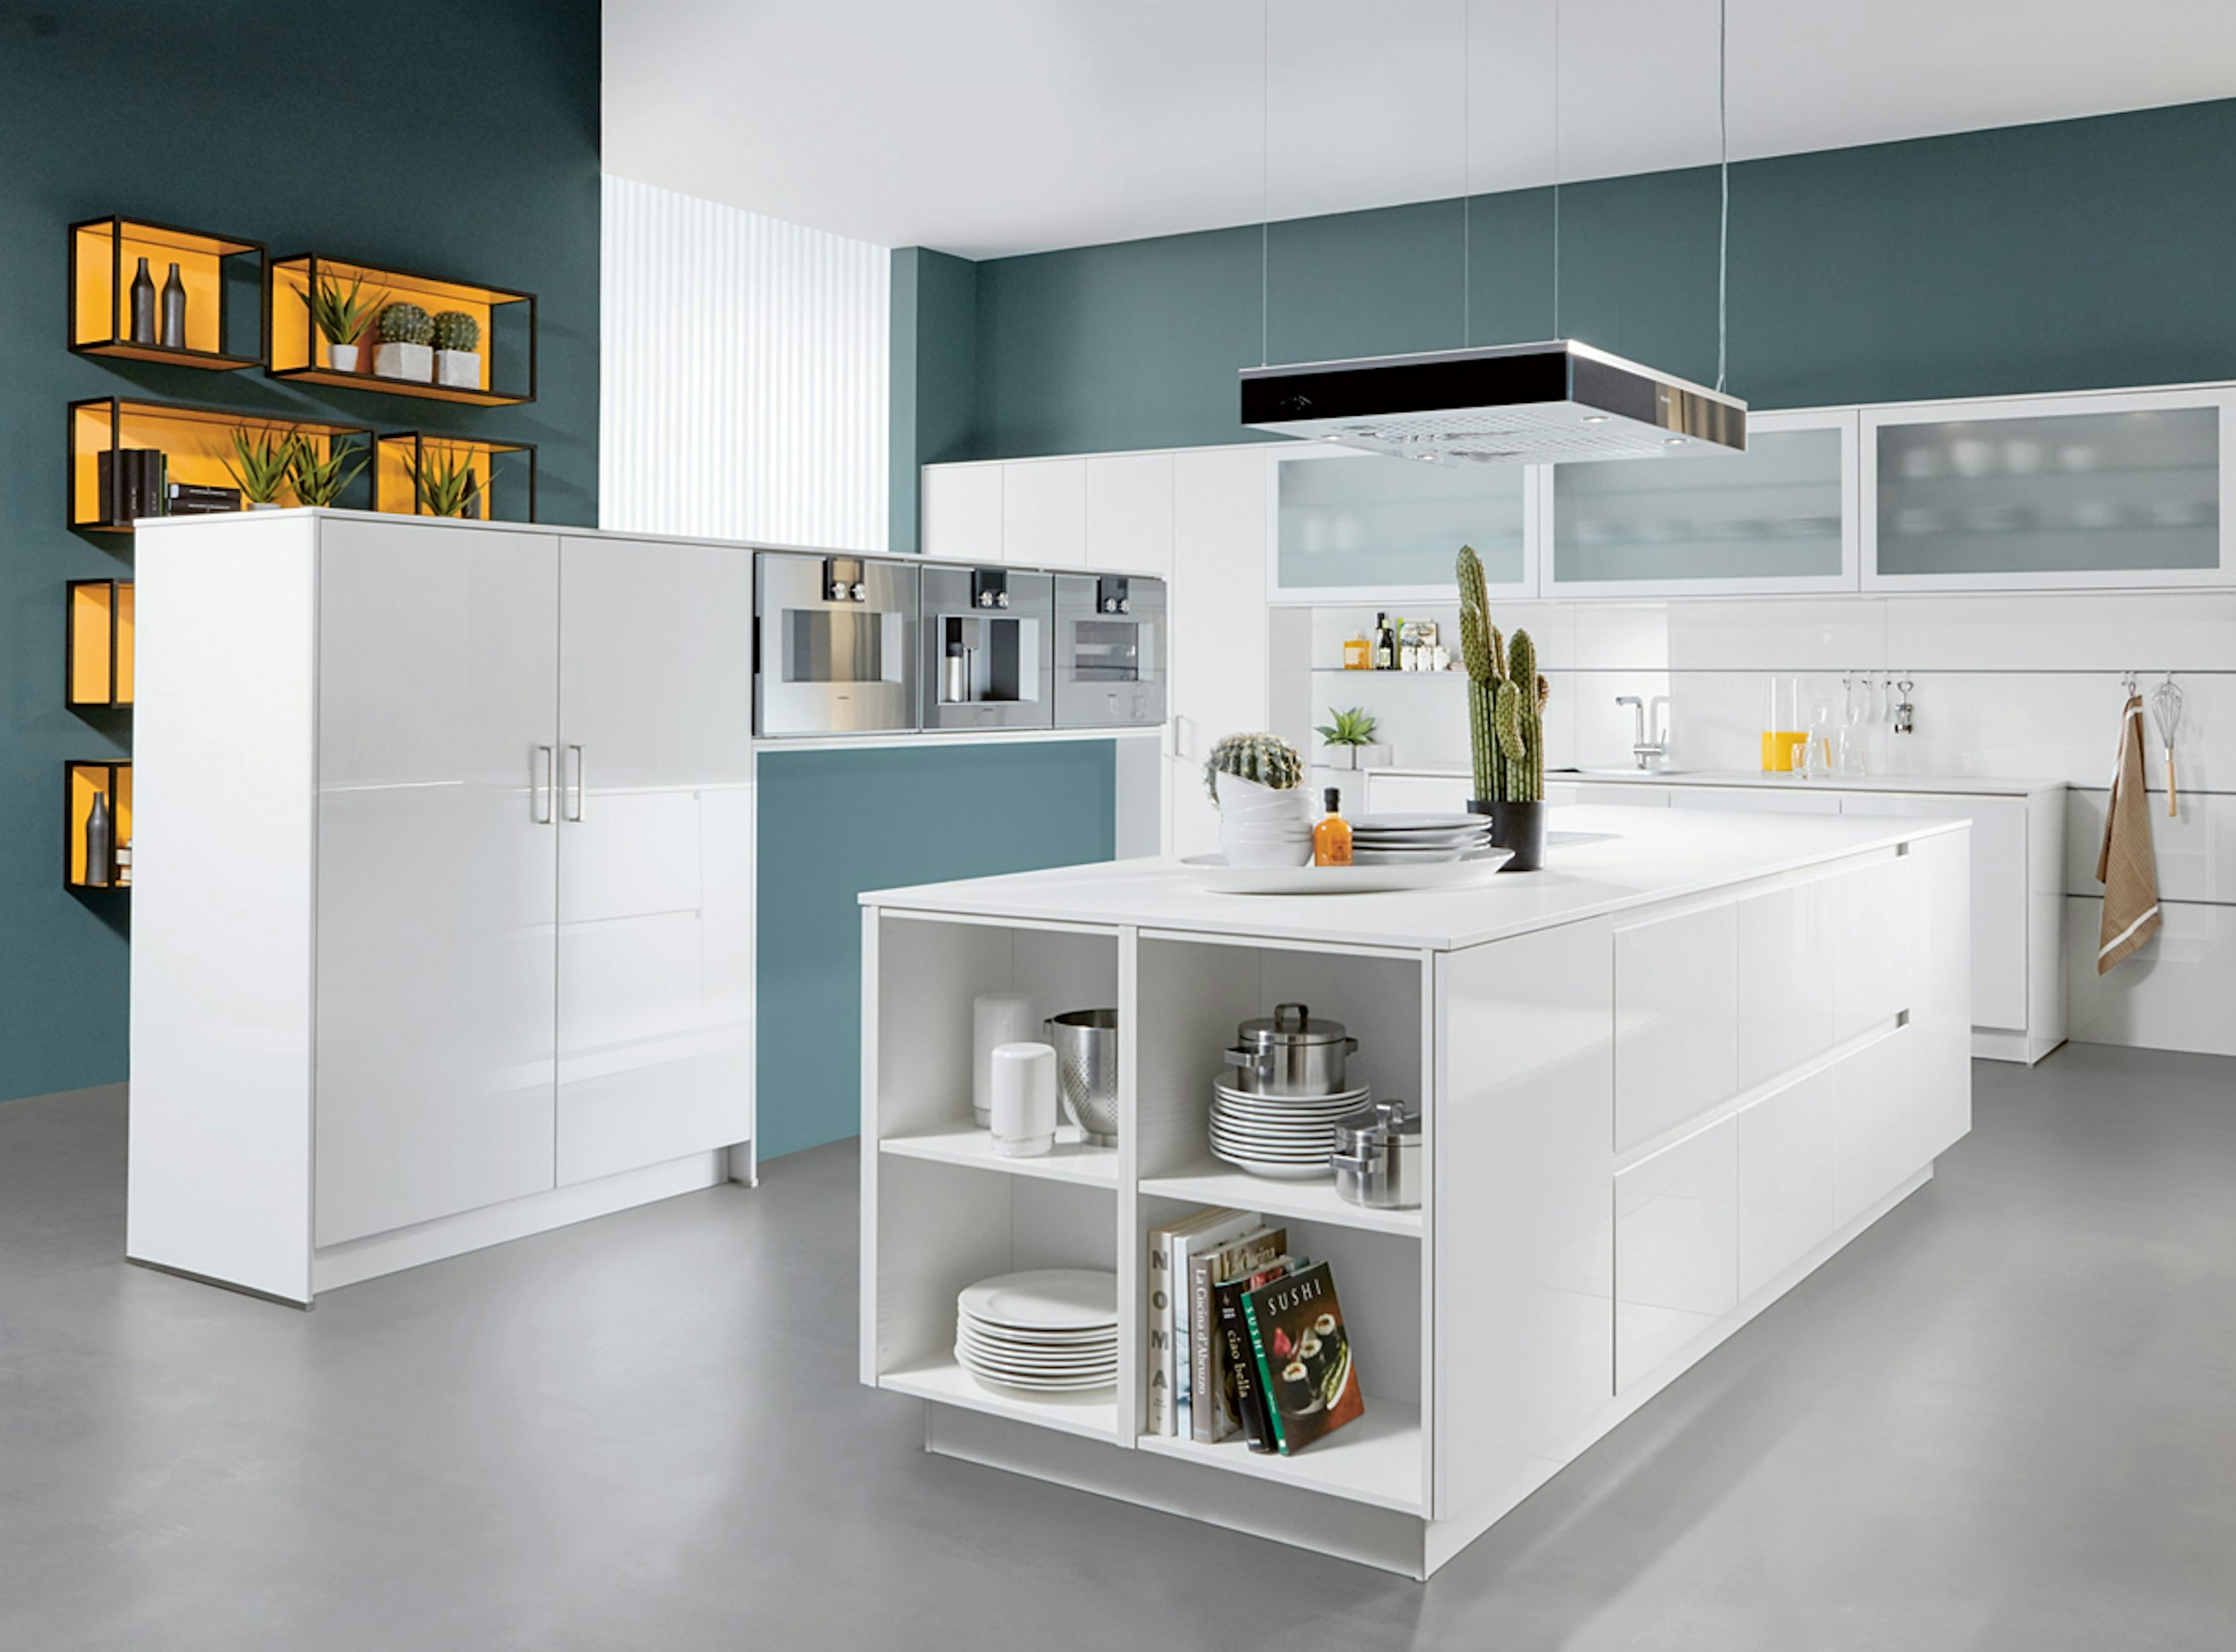 Integreer slimme functionaliteit binnen de voor uw ruimte ideale keukenindeling.